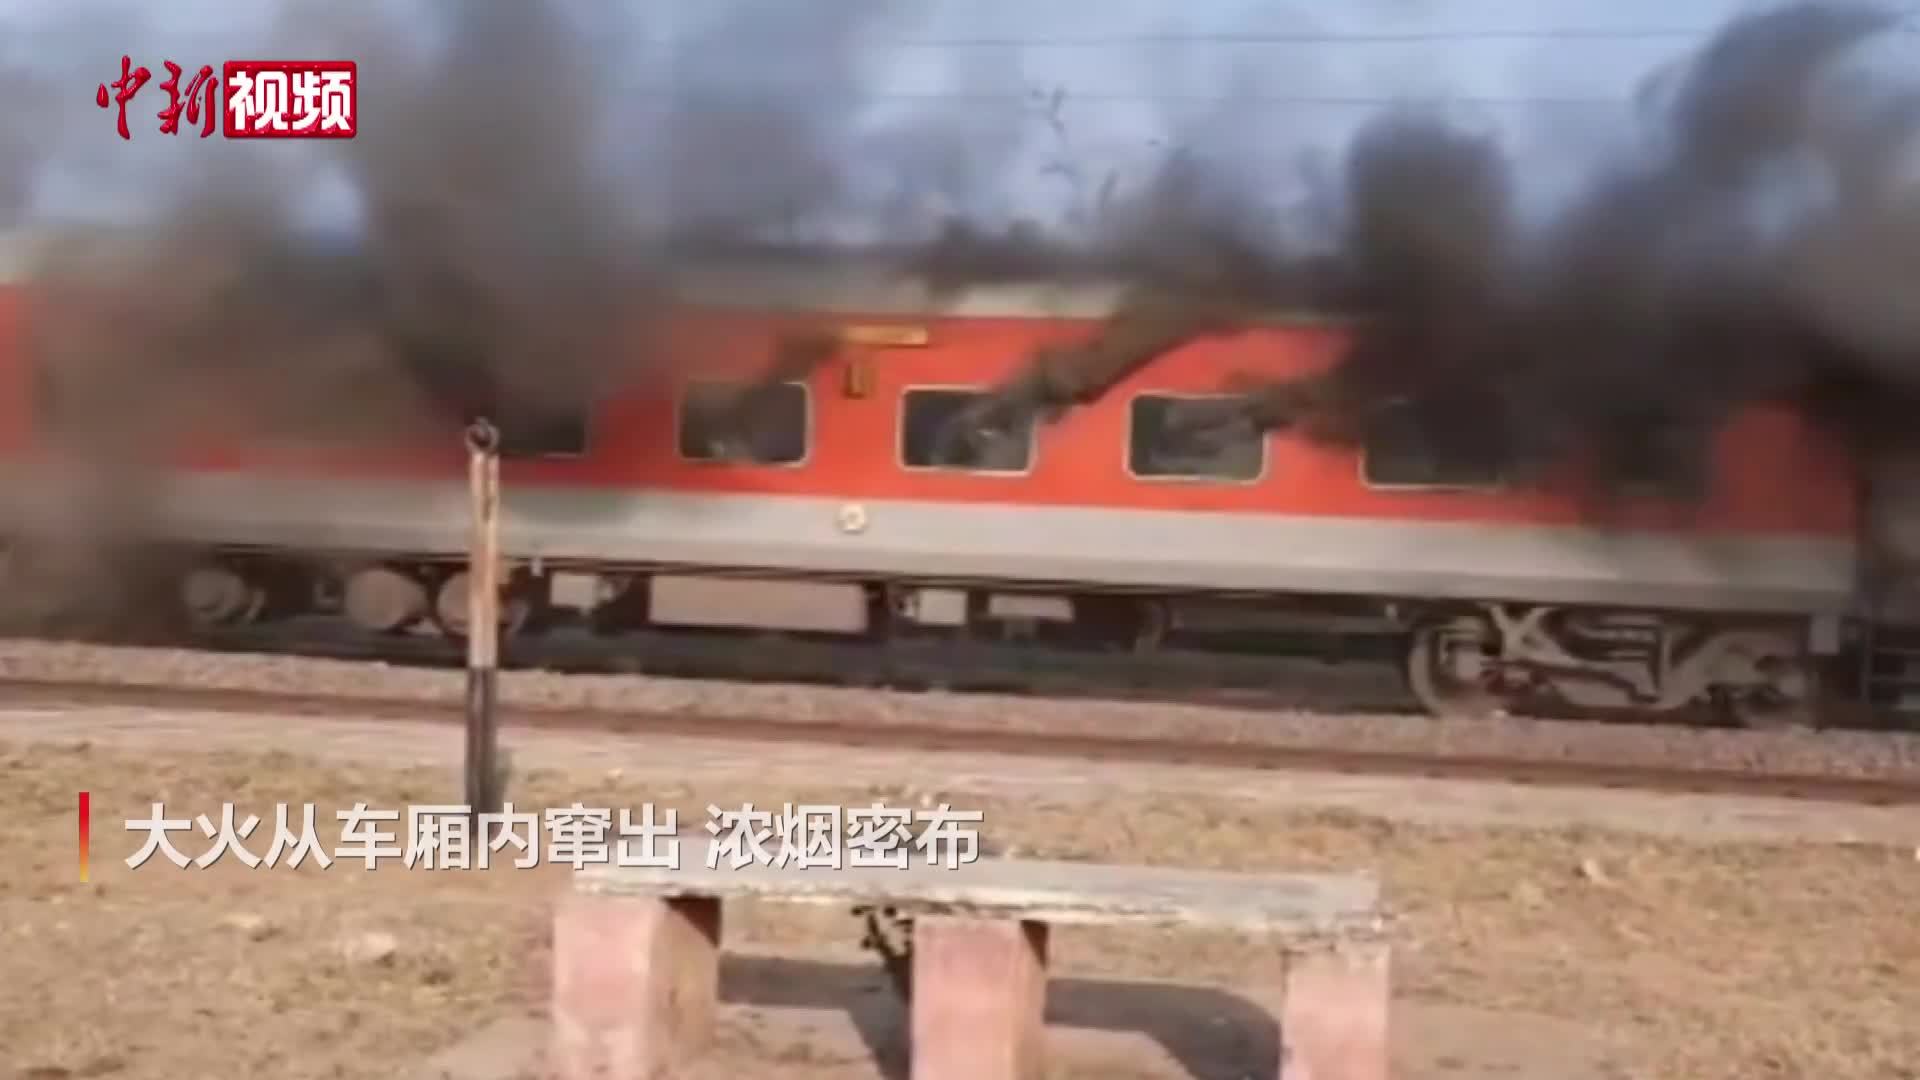 印度一特快列车行驶途中起火